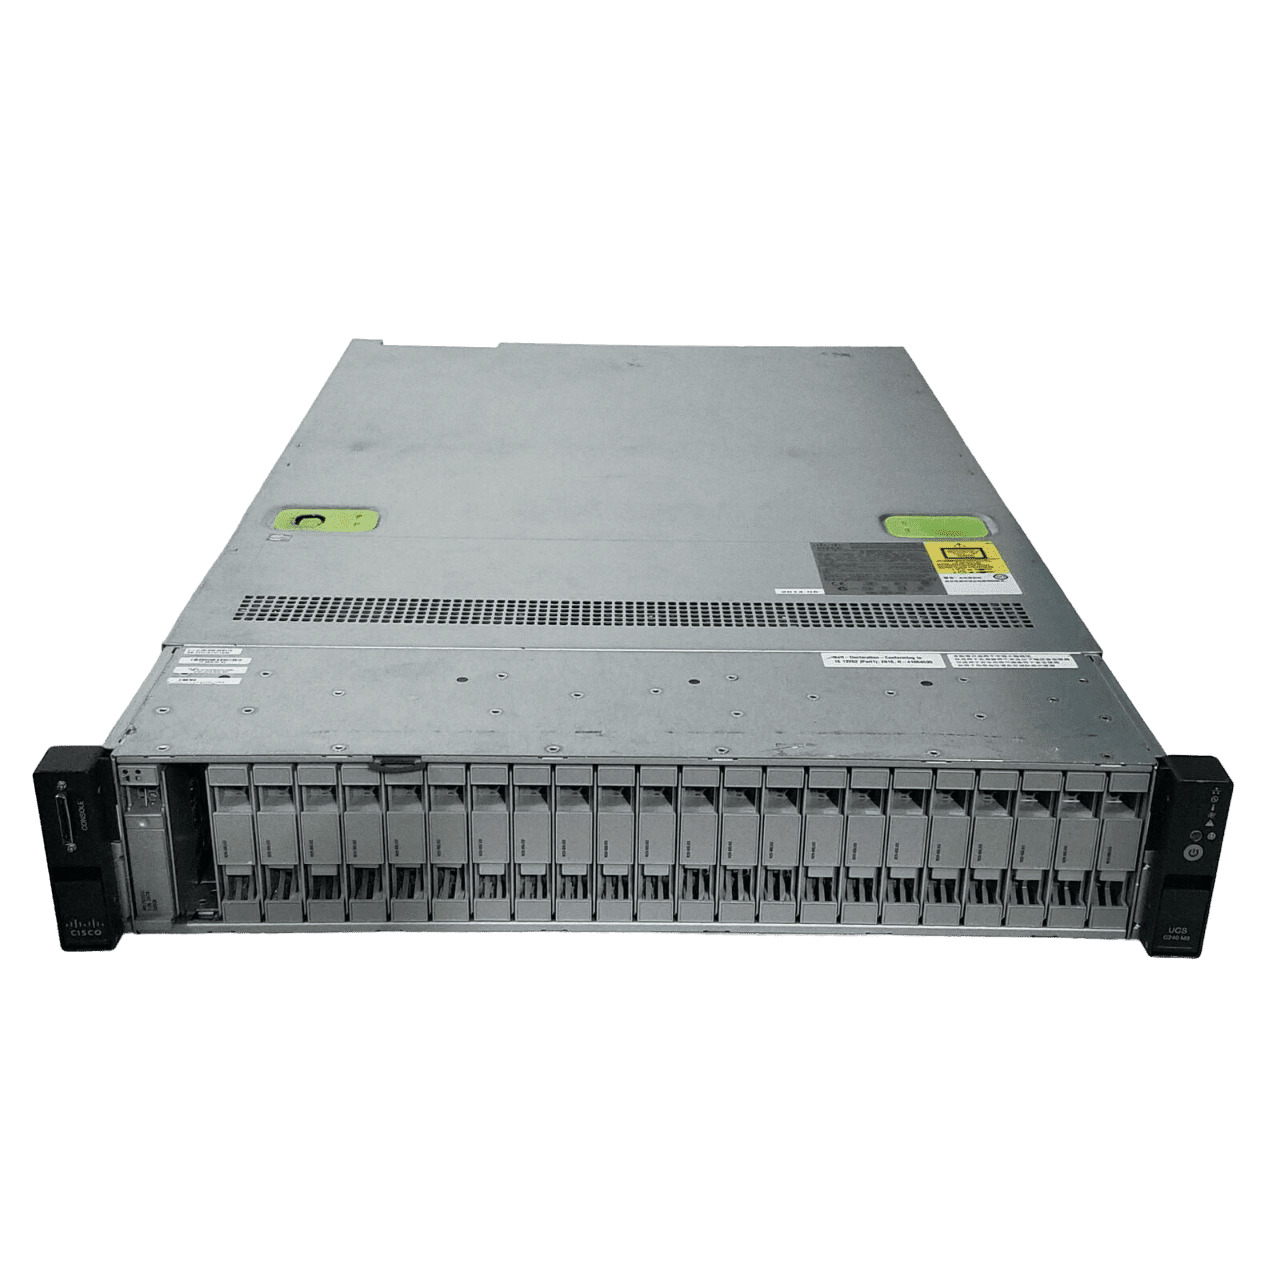 Cisco UCS C240 M3 2x Xeon E5-2690 2.9GHz 16-Cores 128gb Ram  2x 300gb  9266-8i